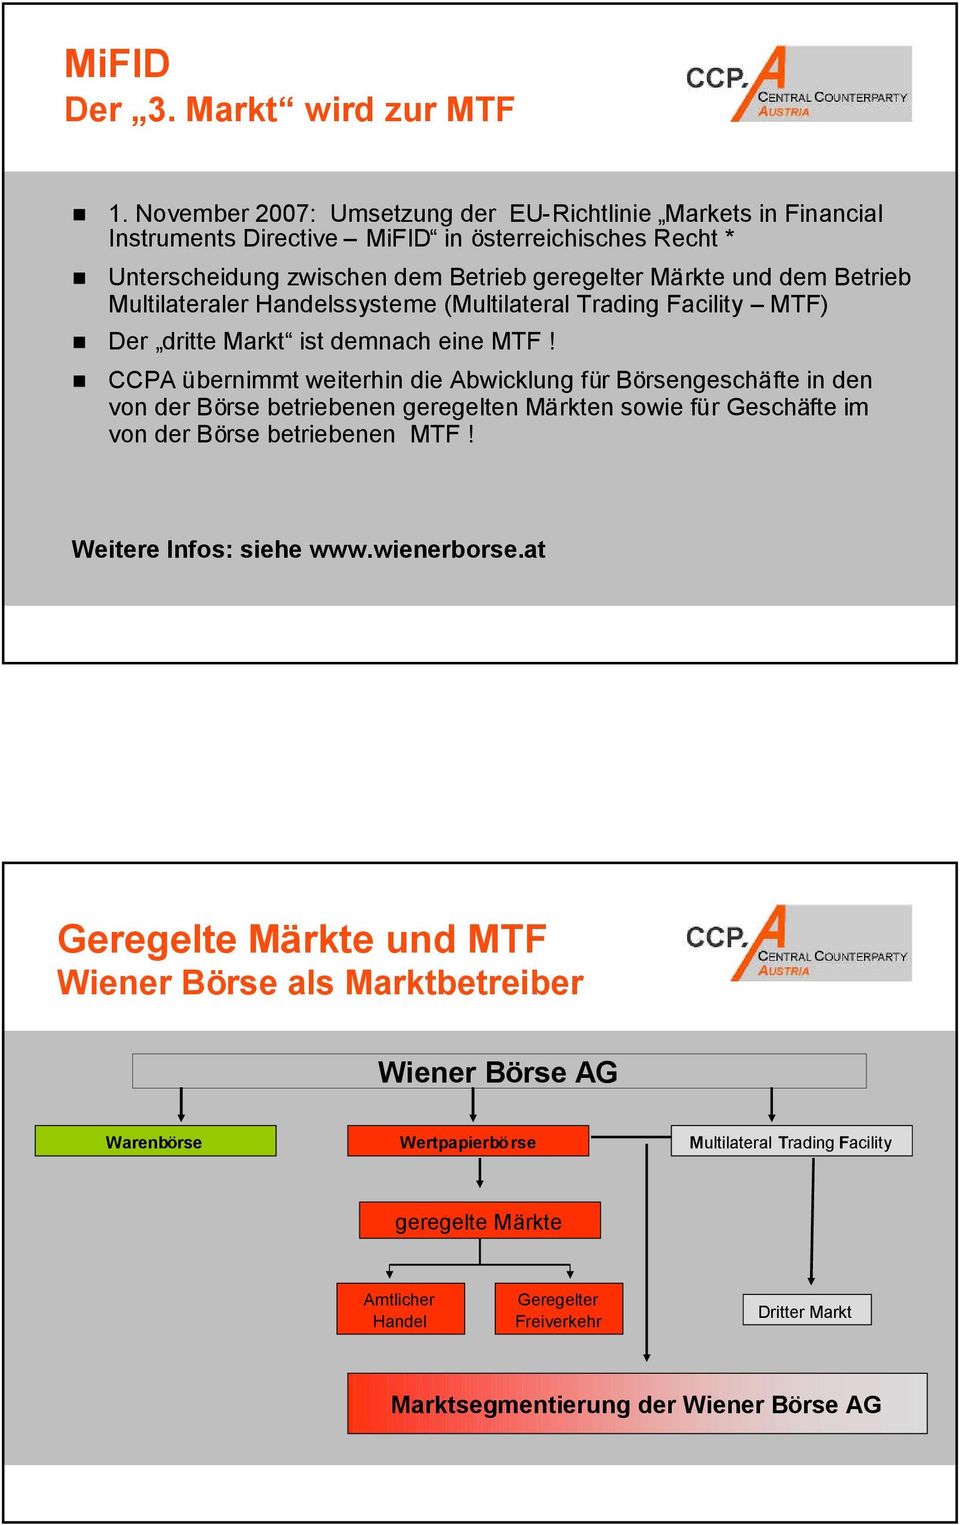 Multilateraler Handelssysteme (Multilateral Trading Facility MTF) Der dritte Markt ist demnach eine MTF!